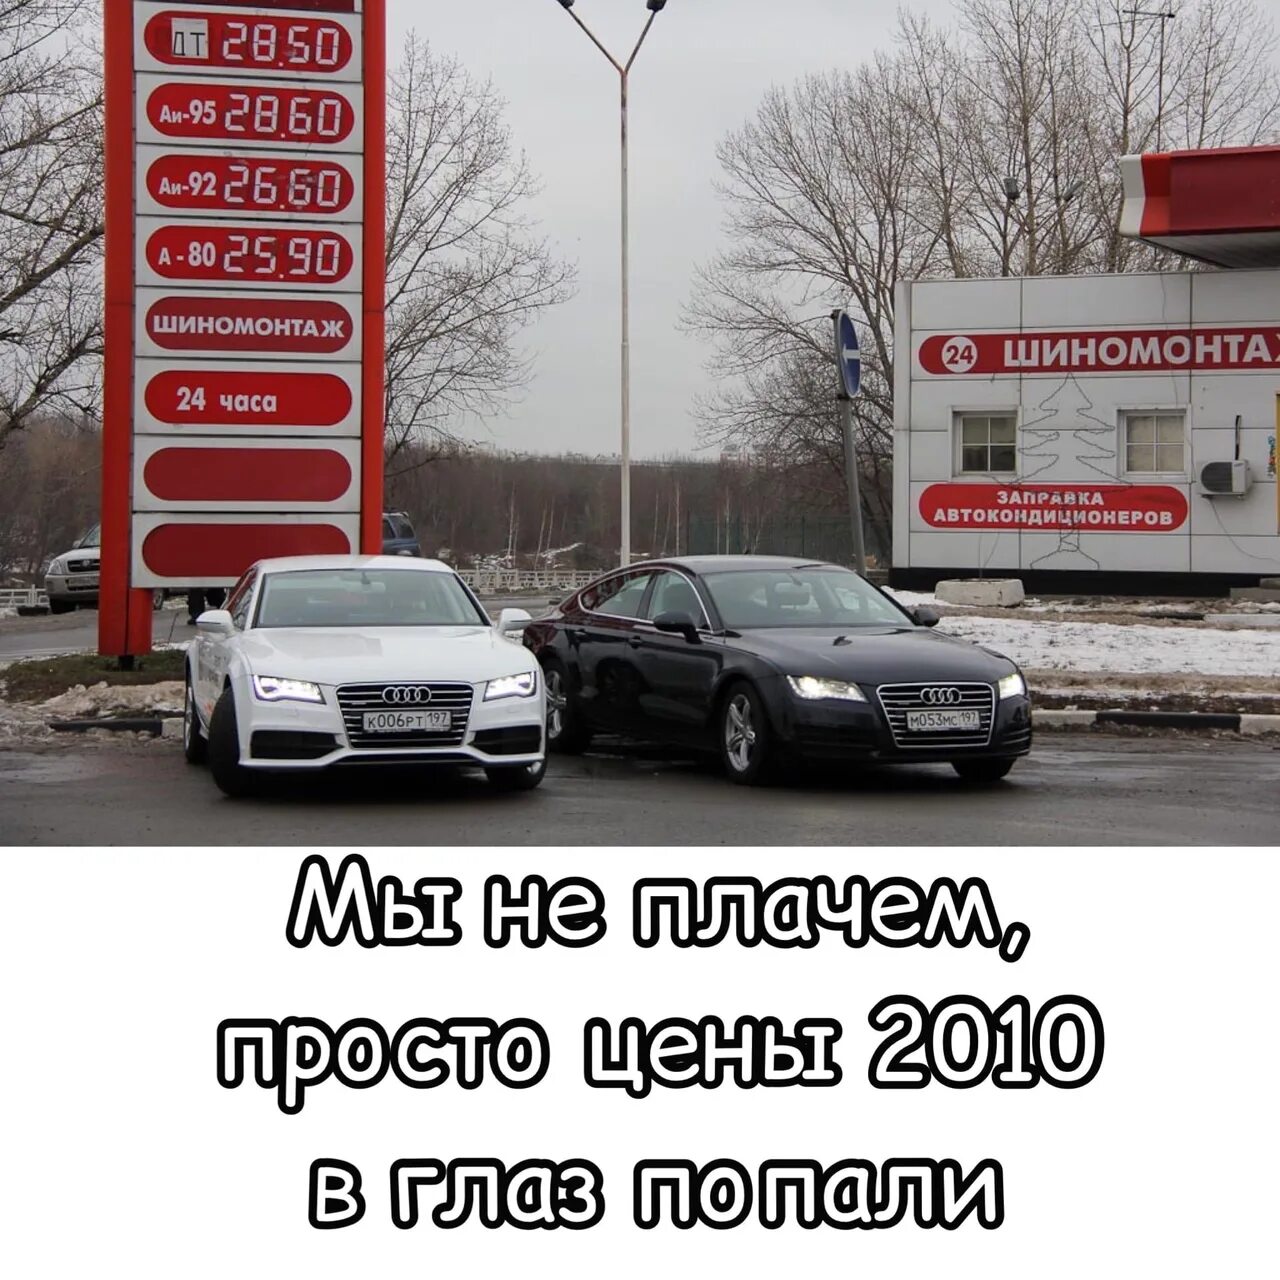 Бензин в 2014 г. Цены на бензин 2010 год. Бензин 2005 год. Бензин 95 в 2010 году. Стоимость бензина в 2010 году в России.